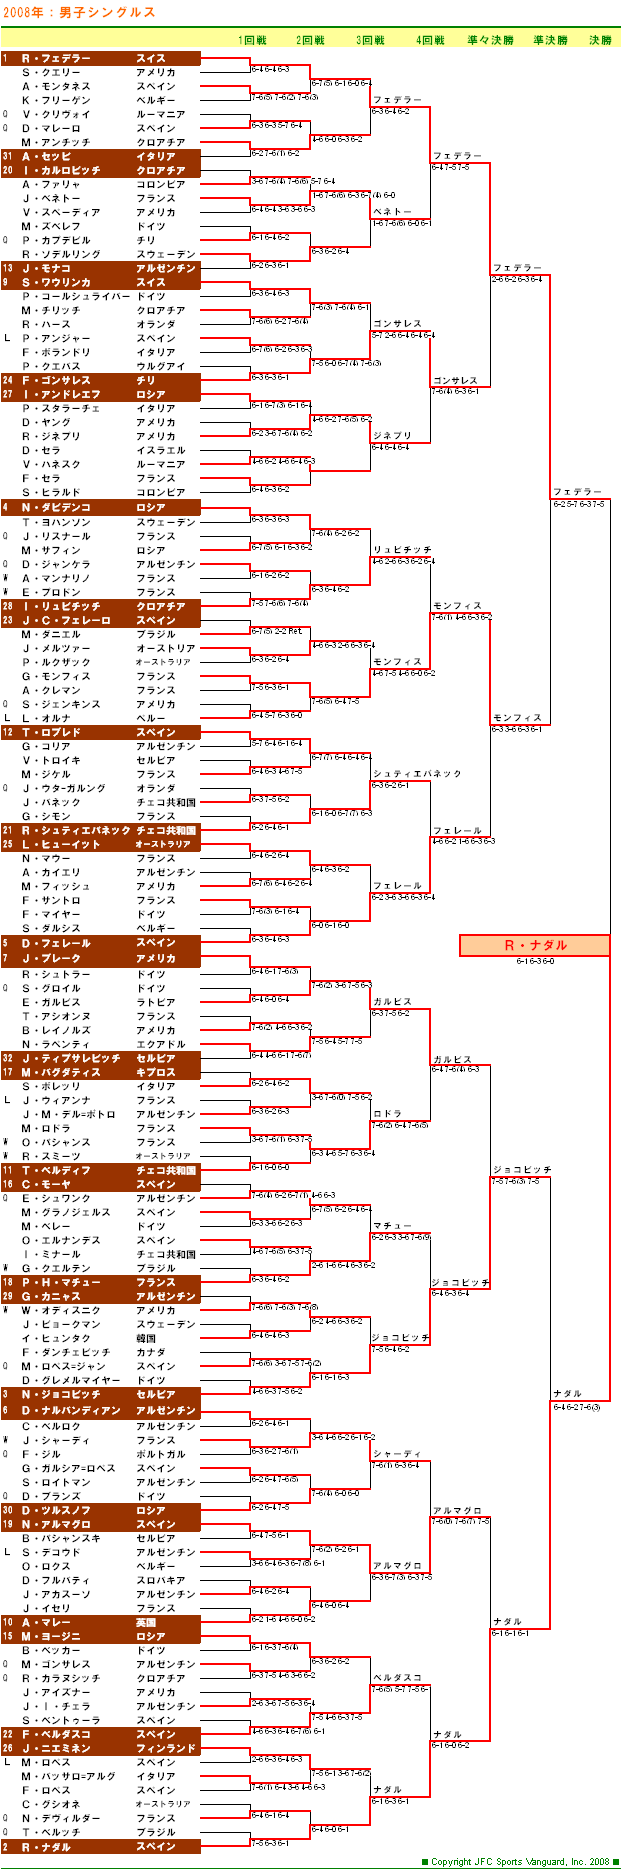 全仏オープンテニス2008　男子シングルスドロー表